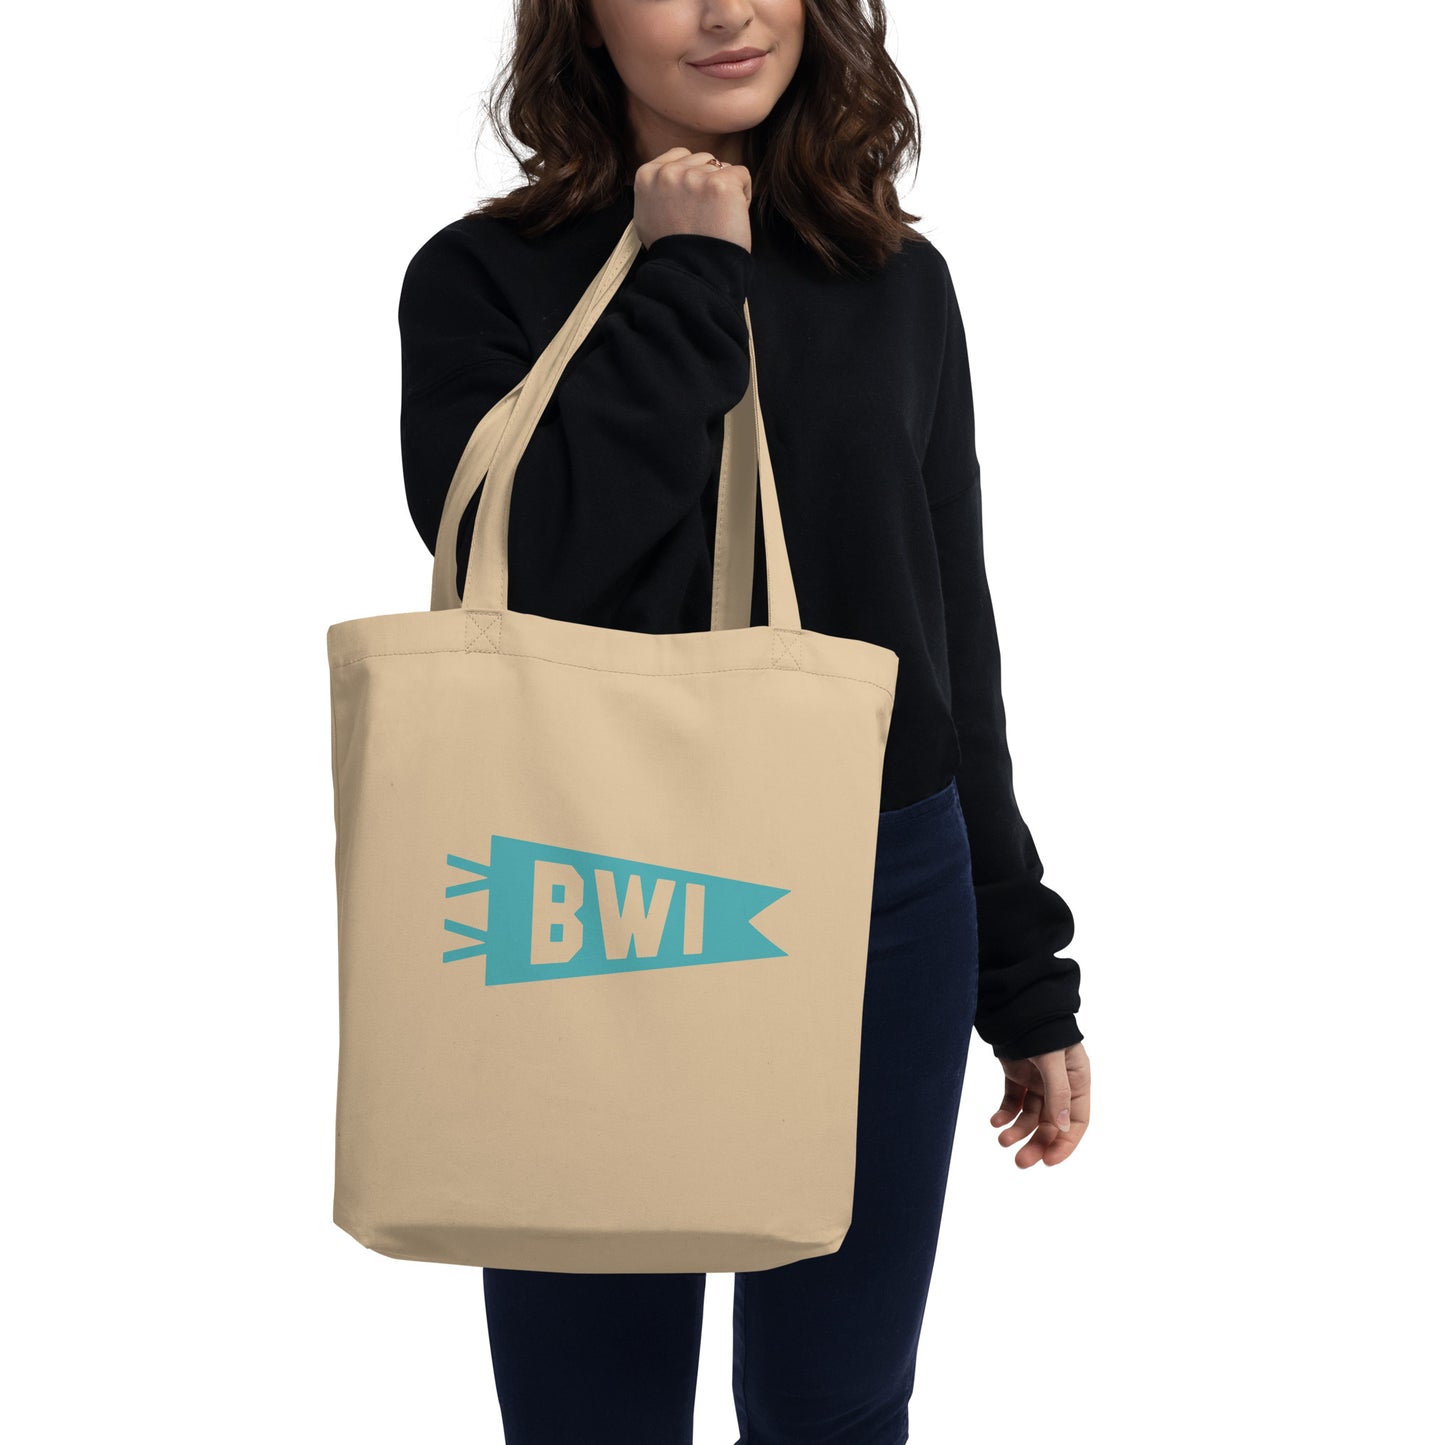 Cool Travel Gift Organic Tote Bag - Viking Blue • BWI Baltimore • YHM Designs - Image 03